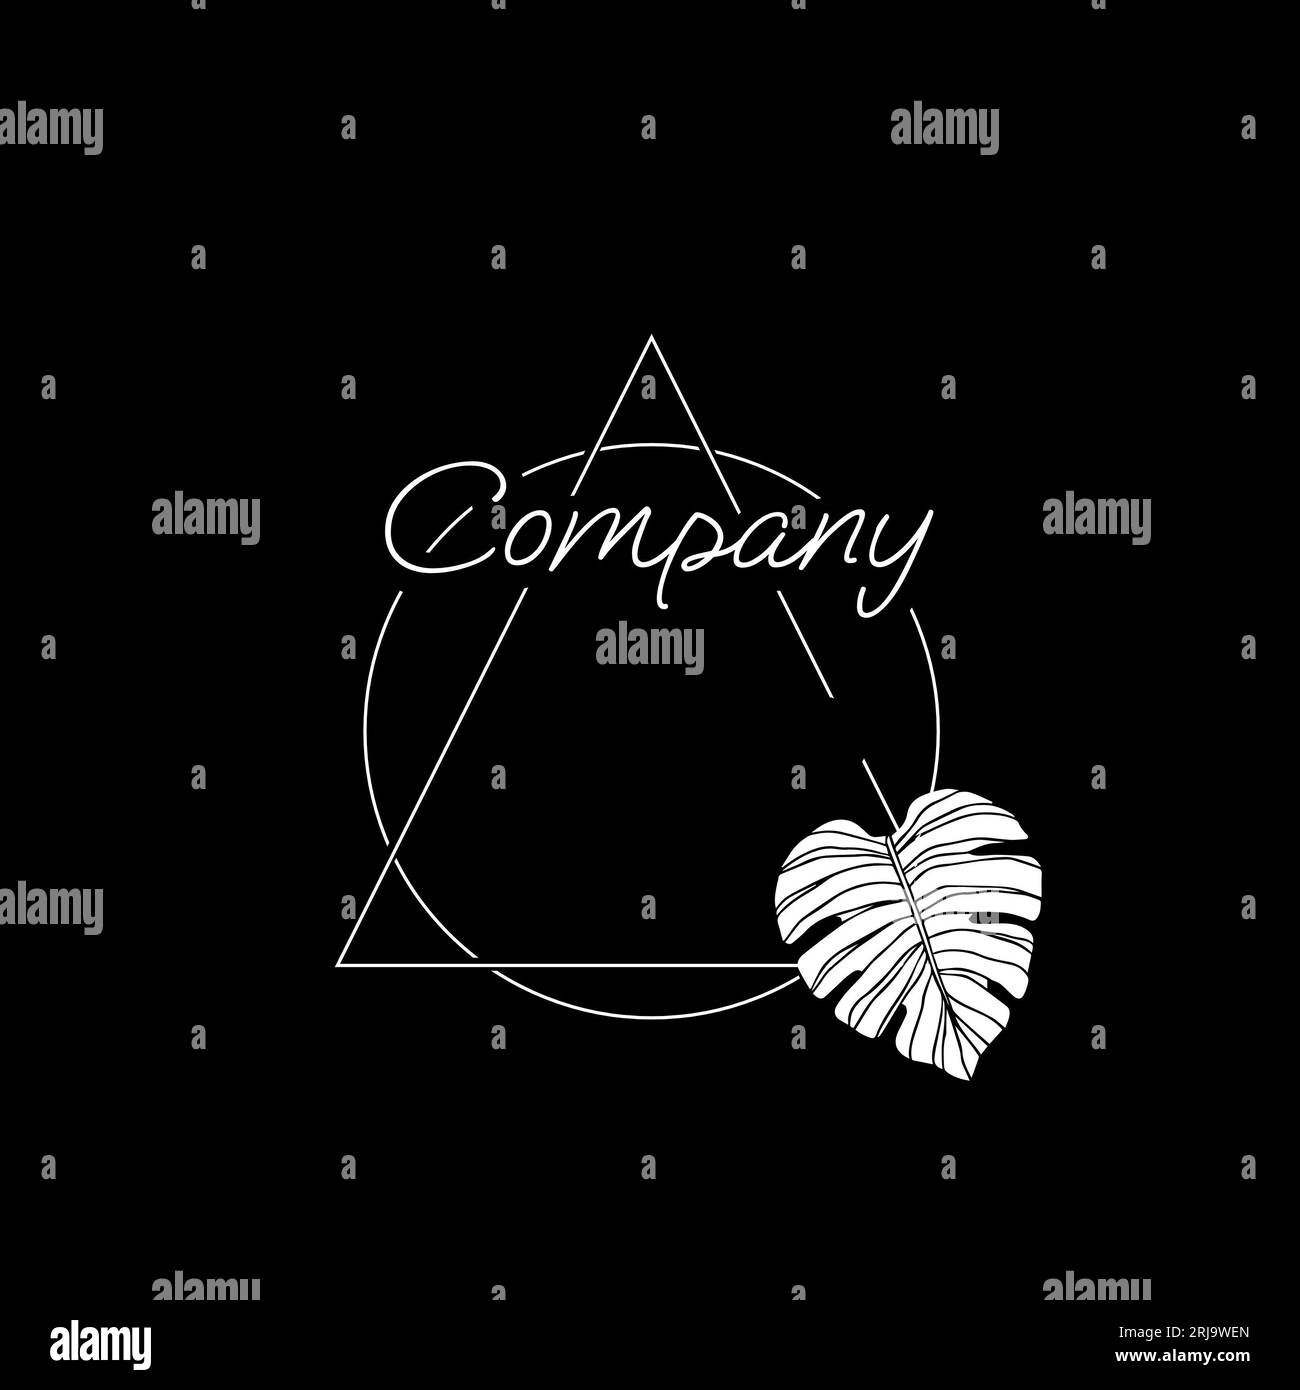 Illustrazione del testo aziendale con triangolo, cerchio e foglia su sfondo nero, spazio di copia Foto Stock